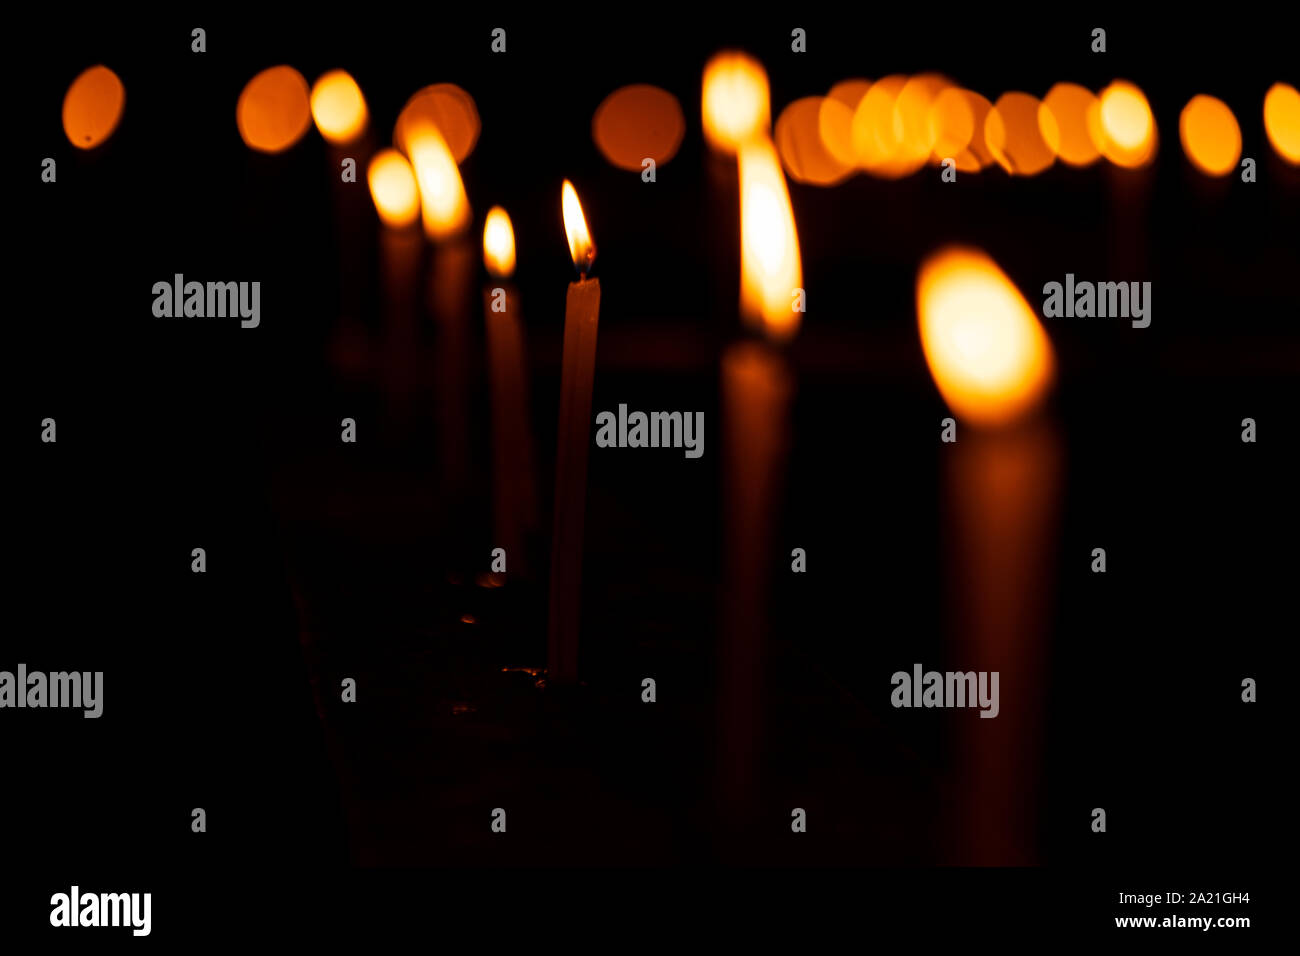 Brennende Kerzen mit einer geringen Tiefenschärfe Kerzenlicht Hintergrundbild für diwali festliche Dekoration oder Kirche Feier am Abend mit kopieren. Stockfoto